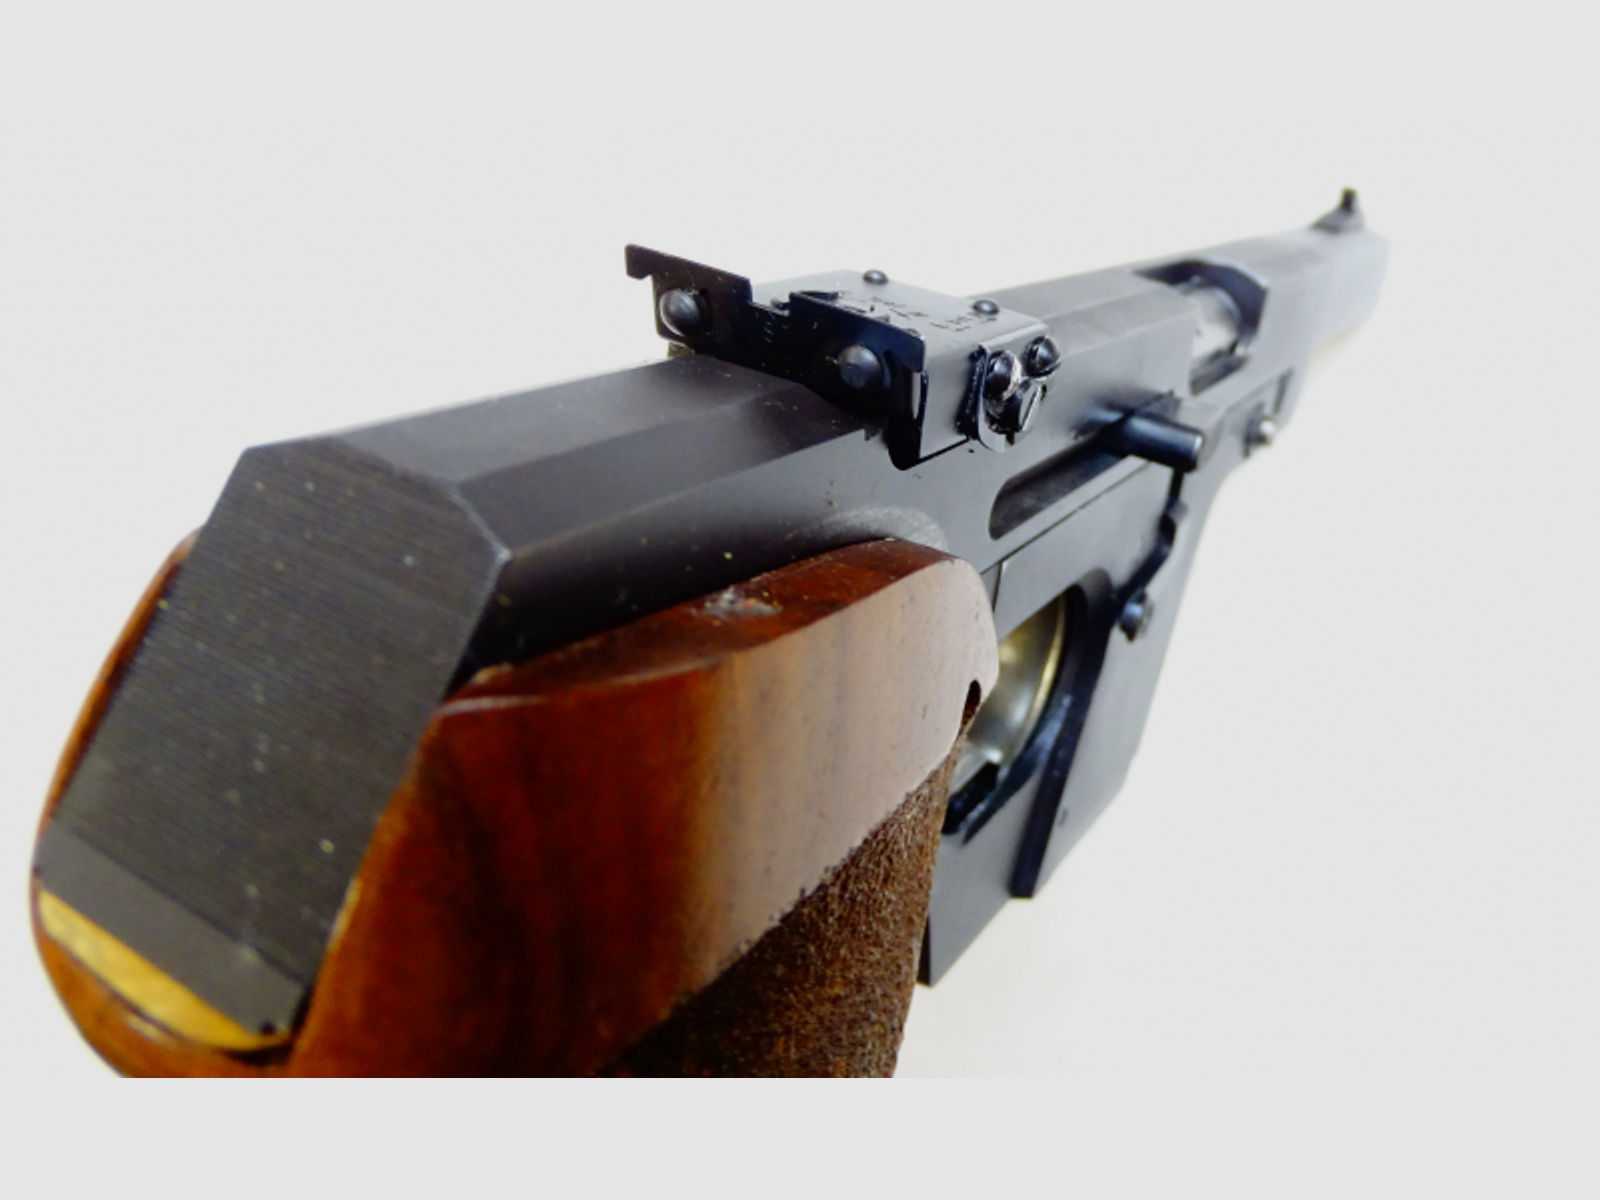 Walther GSP Sportpistole im Kaliber .22 lr.